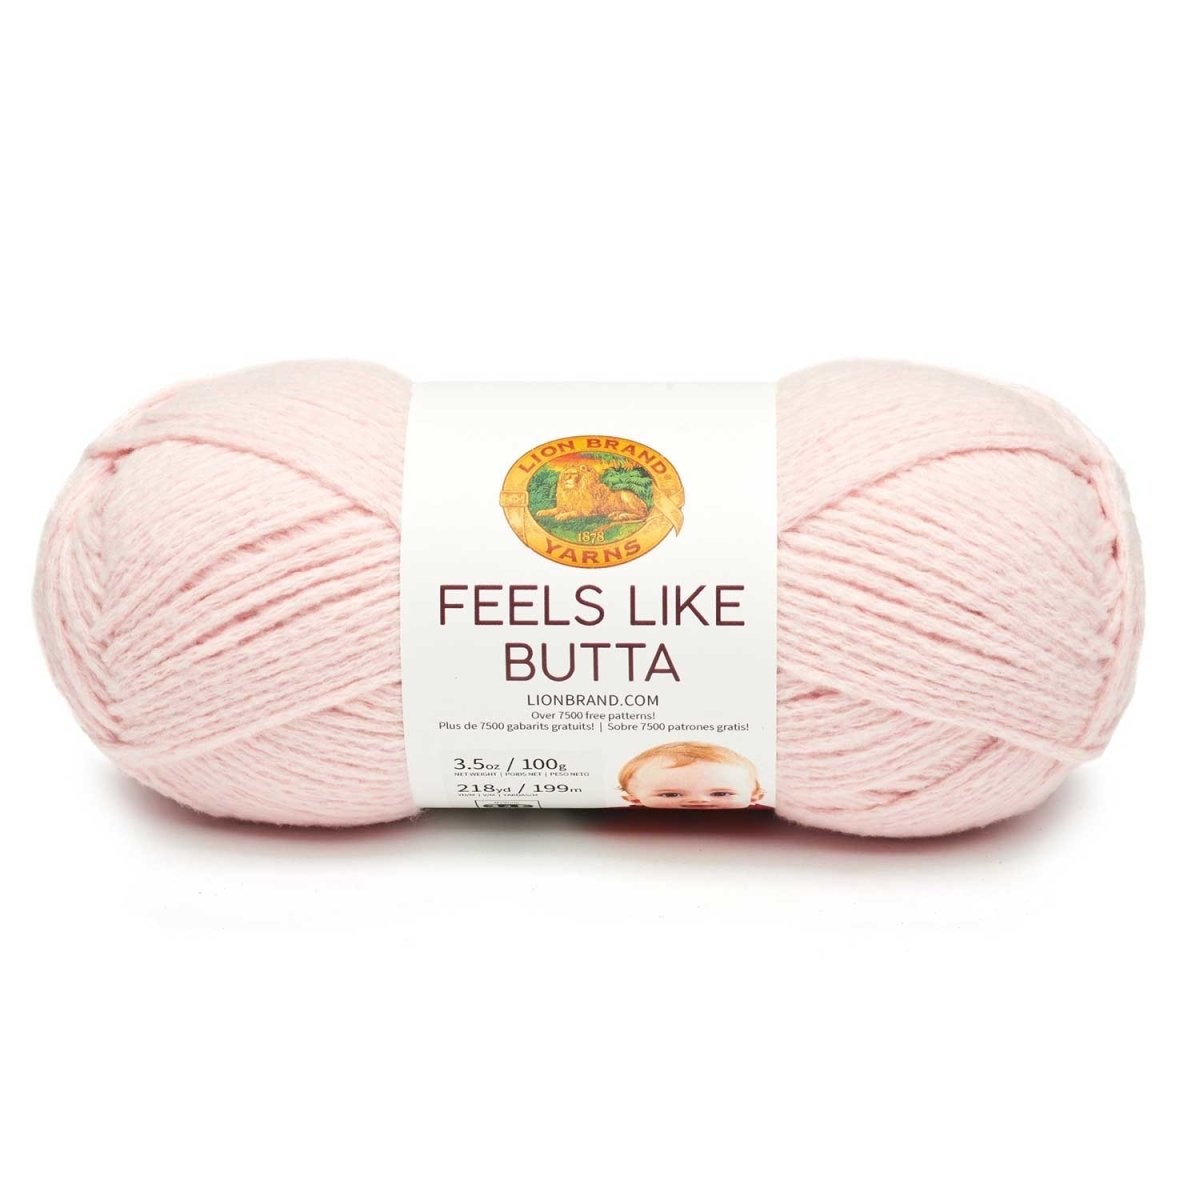 FEELS LIKE BUTTA - Crochetstores215-101